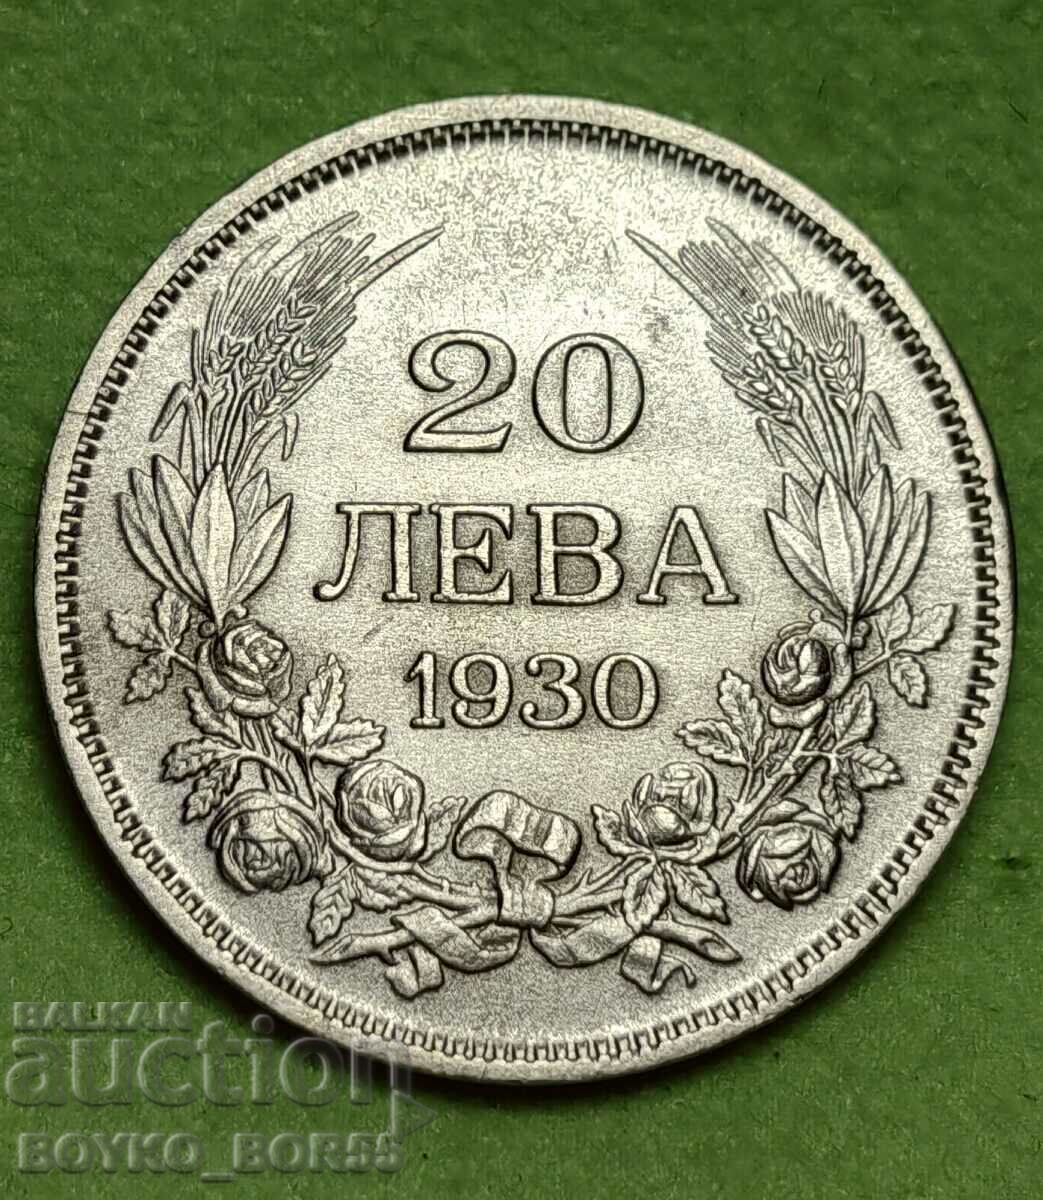 TOP QUALITY! Silver Coin 20 Leva 1930